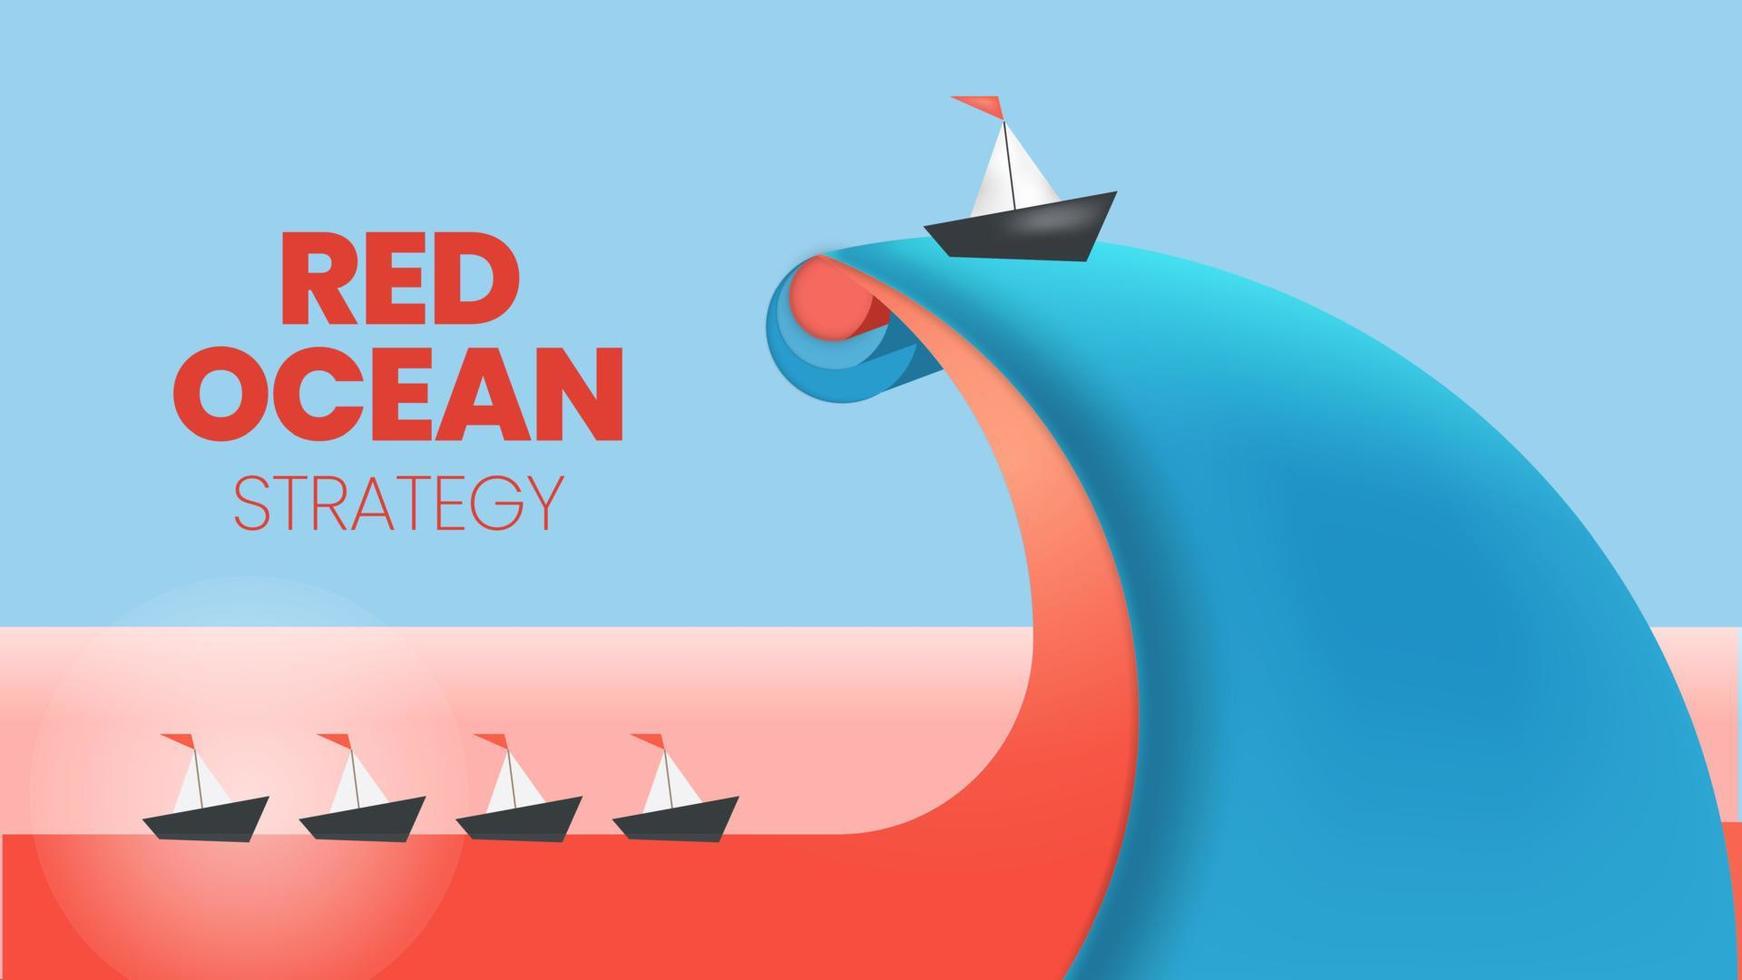 a apresentação do conceito de estratégia do oceano azul é um elemento infográfico vetorial do marketing de nicho. o mar vermelho tem uma competição de massa sangrenta e o lado azul pioneiro tem mais vantagens e oportunidades vetor